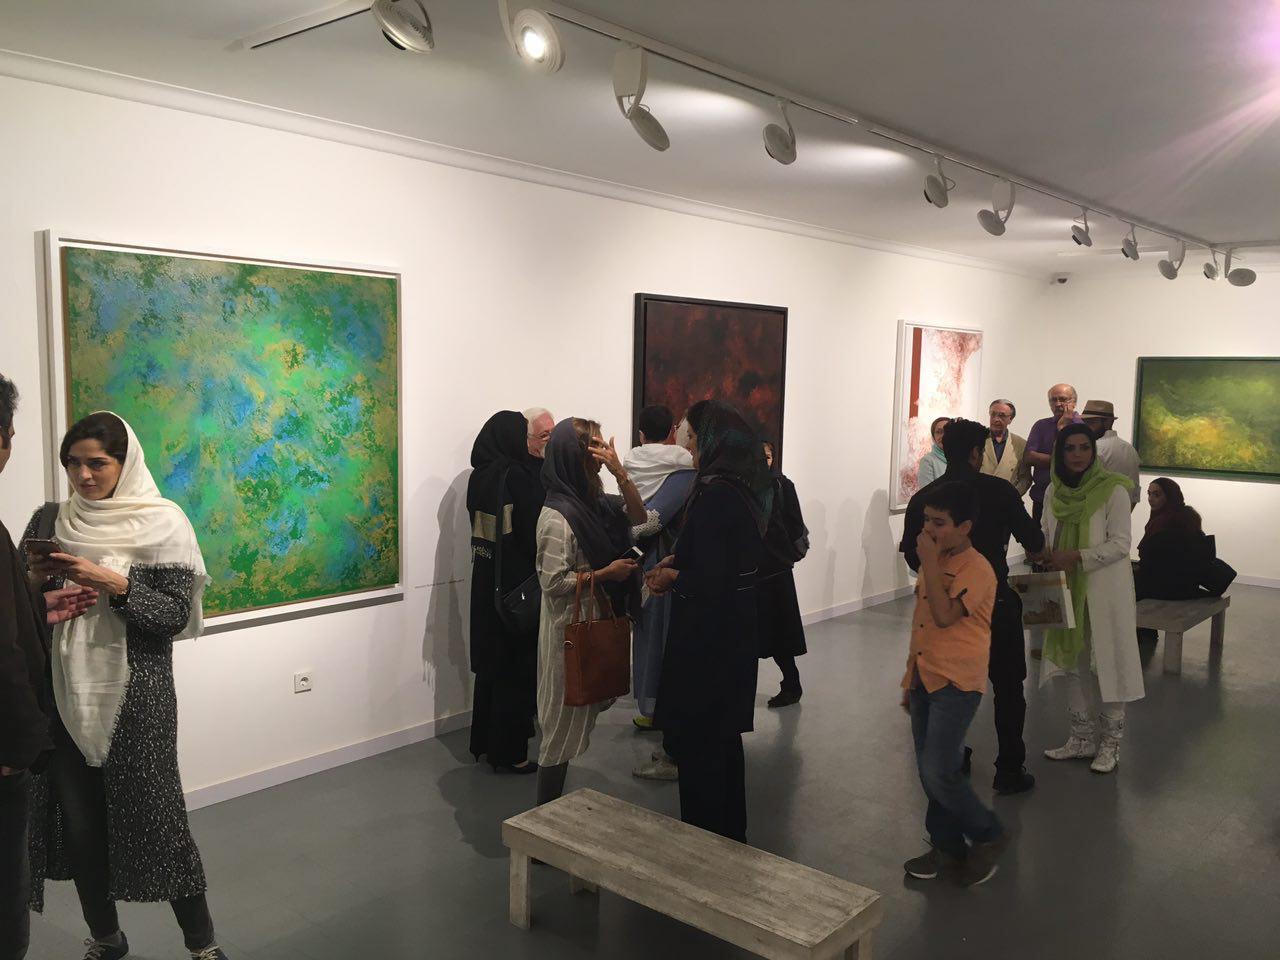 گزارش تصویری نمایشگاه نقاشی های هدی بلوری با عنوان "دورترین نگاه" در گالری هور